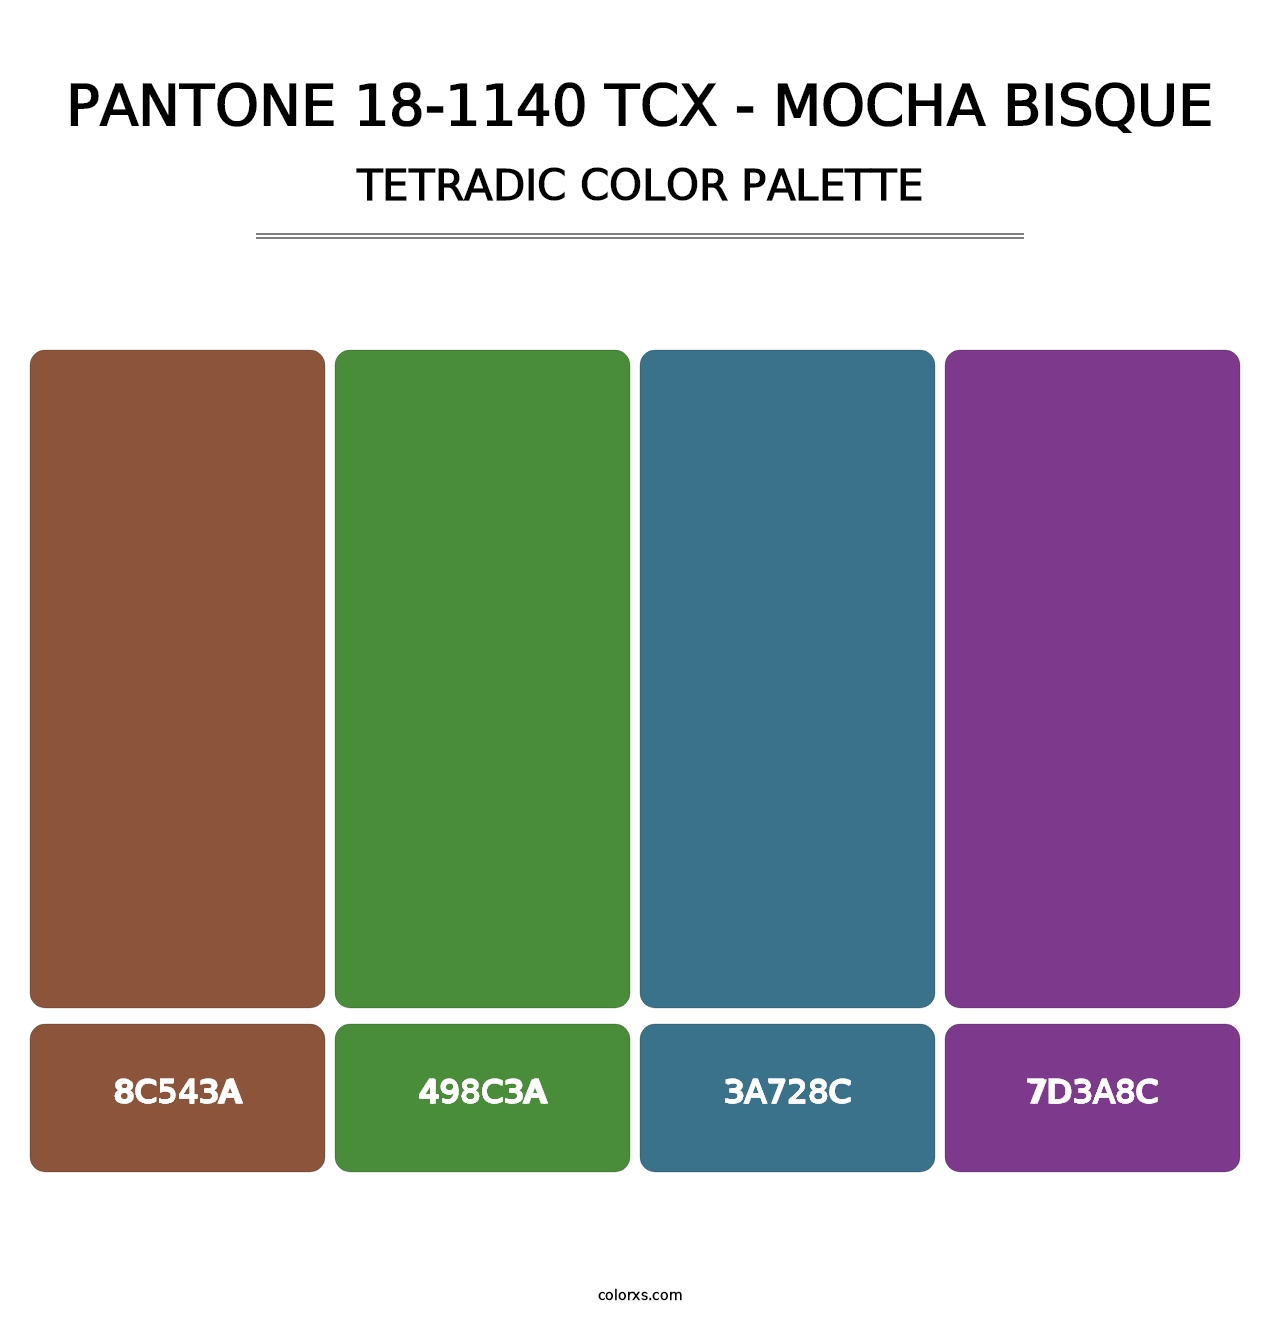 PANTONE 18-1140 TCX - Mocha Bisque - Tetradic Color Palette